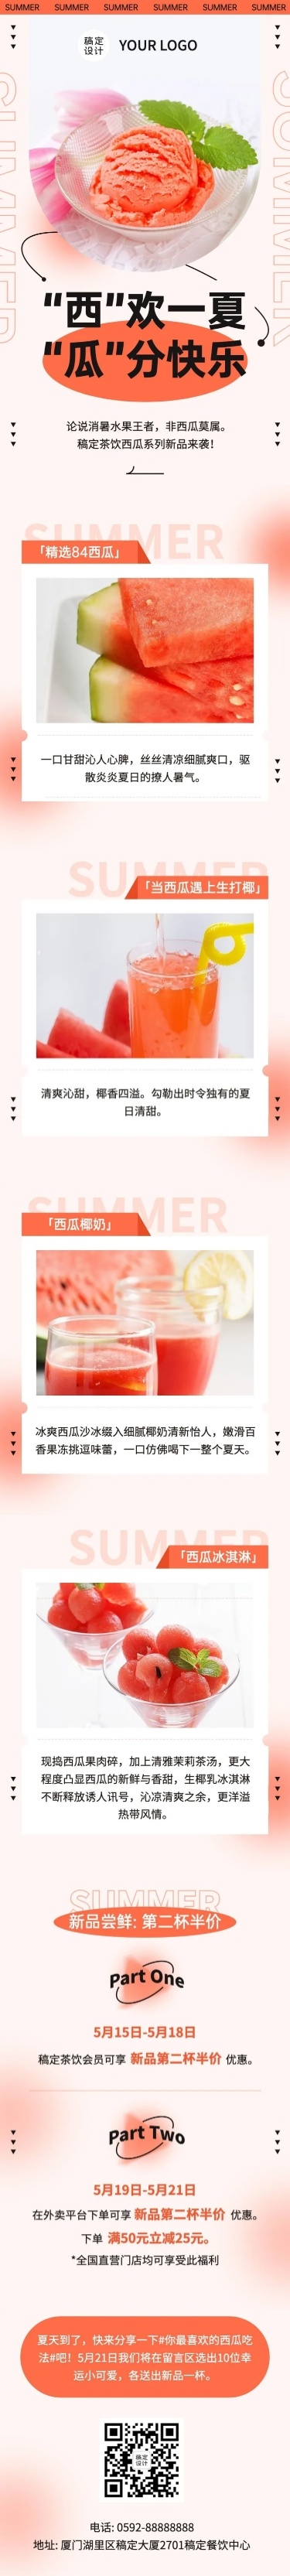 清新餐饮奶茶新品上市营销文章长图